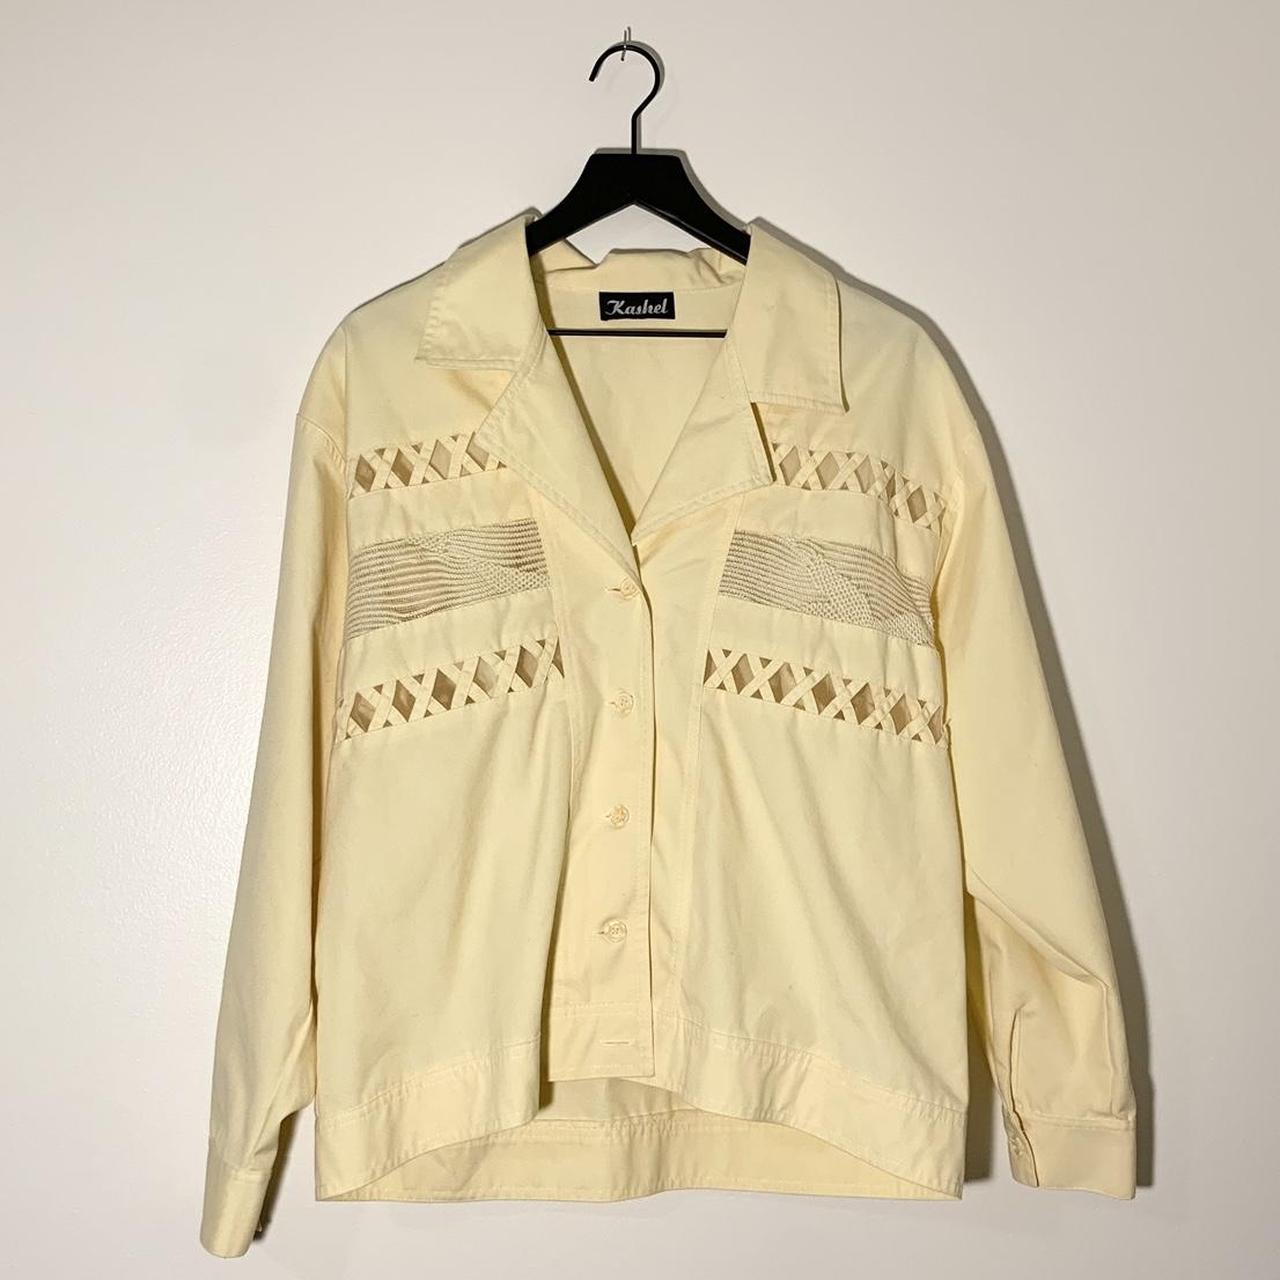 Vintage 80's jacket by Kashel. Lightweight pale... - Depop